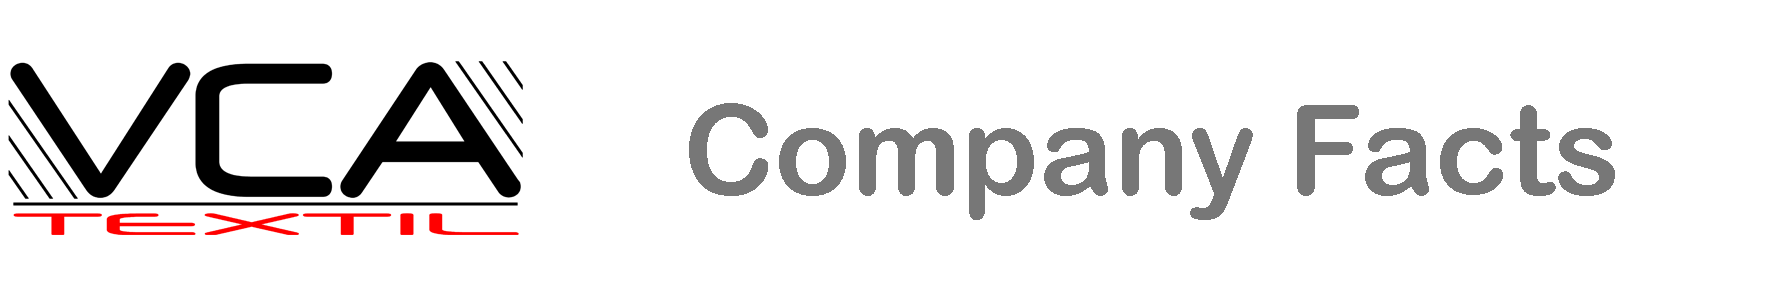 Header-Company_Facts